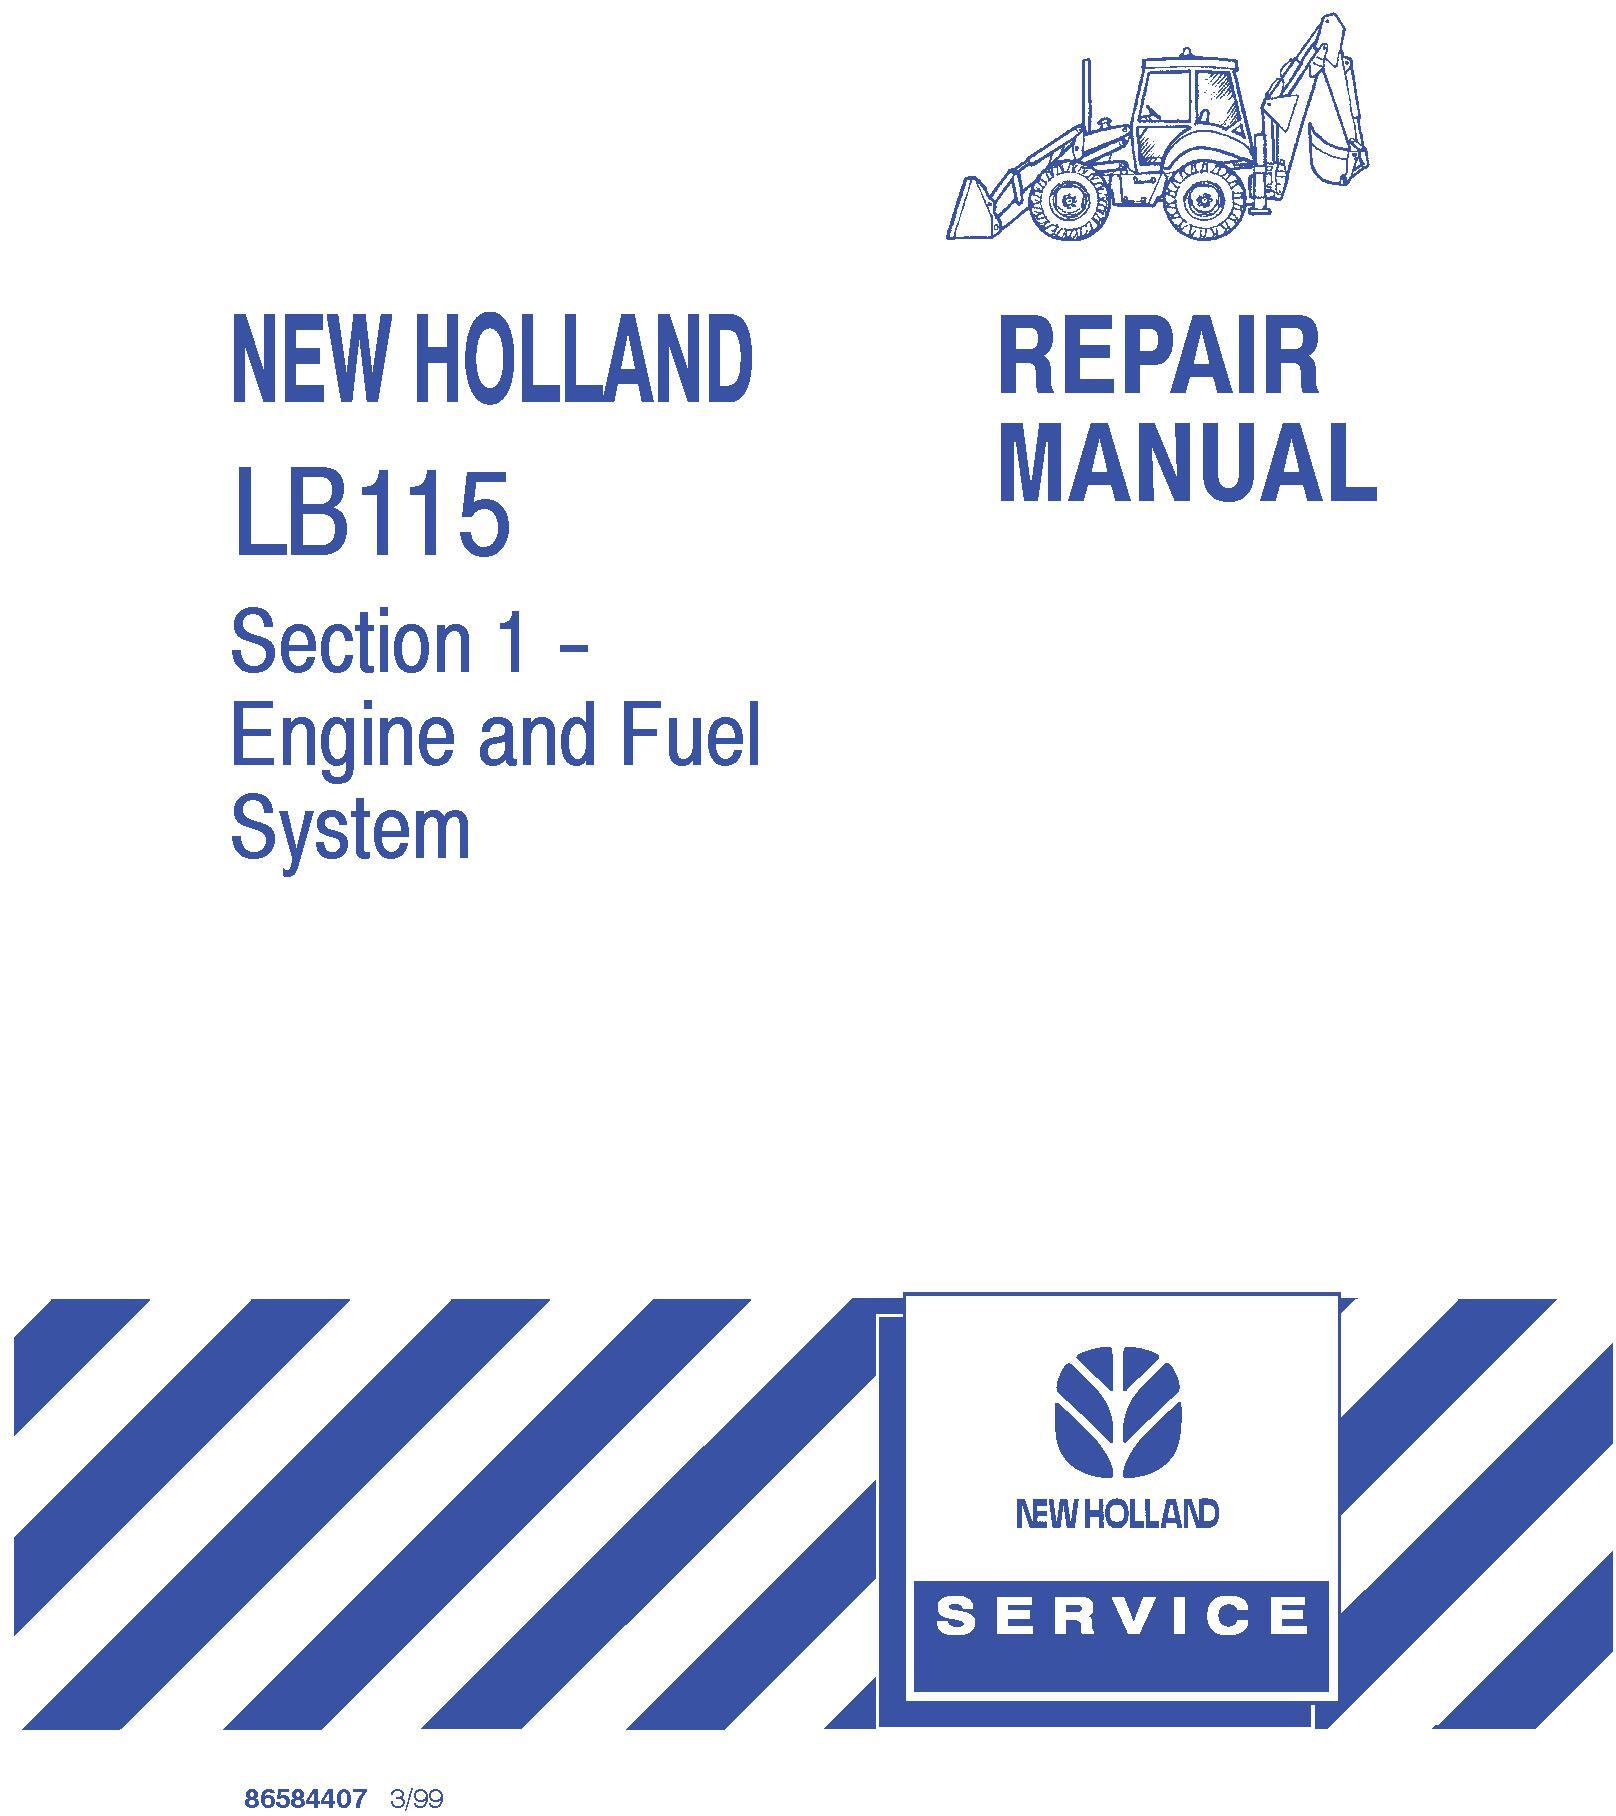 New Holland LB115 Backhoe Loader Service Manual - 19945